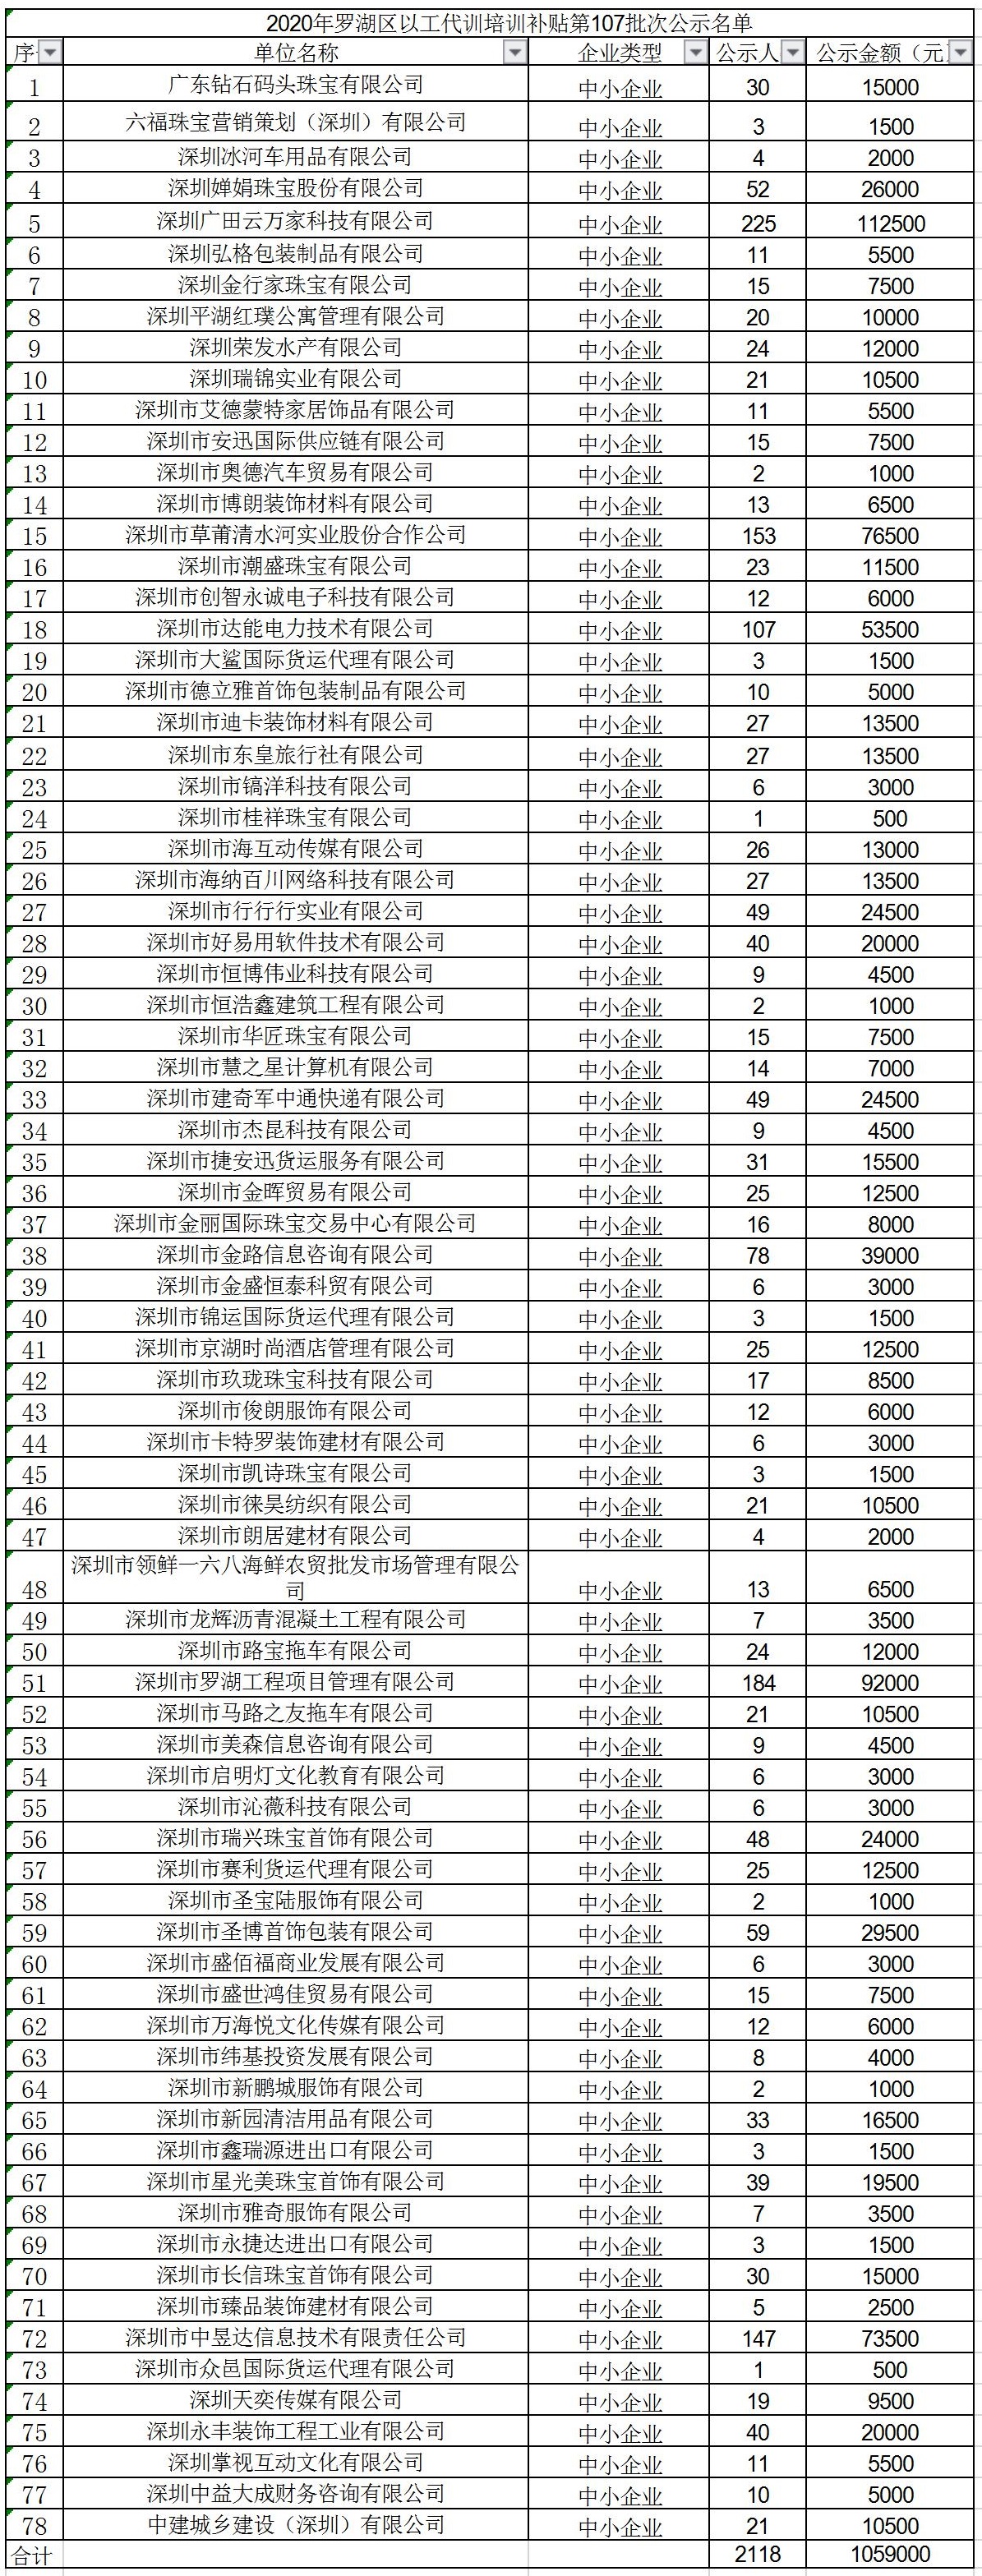 2020年深圳市罗湖区以工代训培训补贴第107批次公示名单.jpg